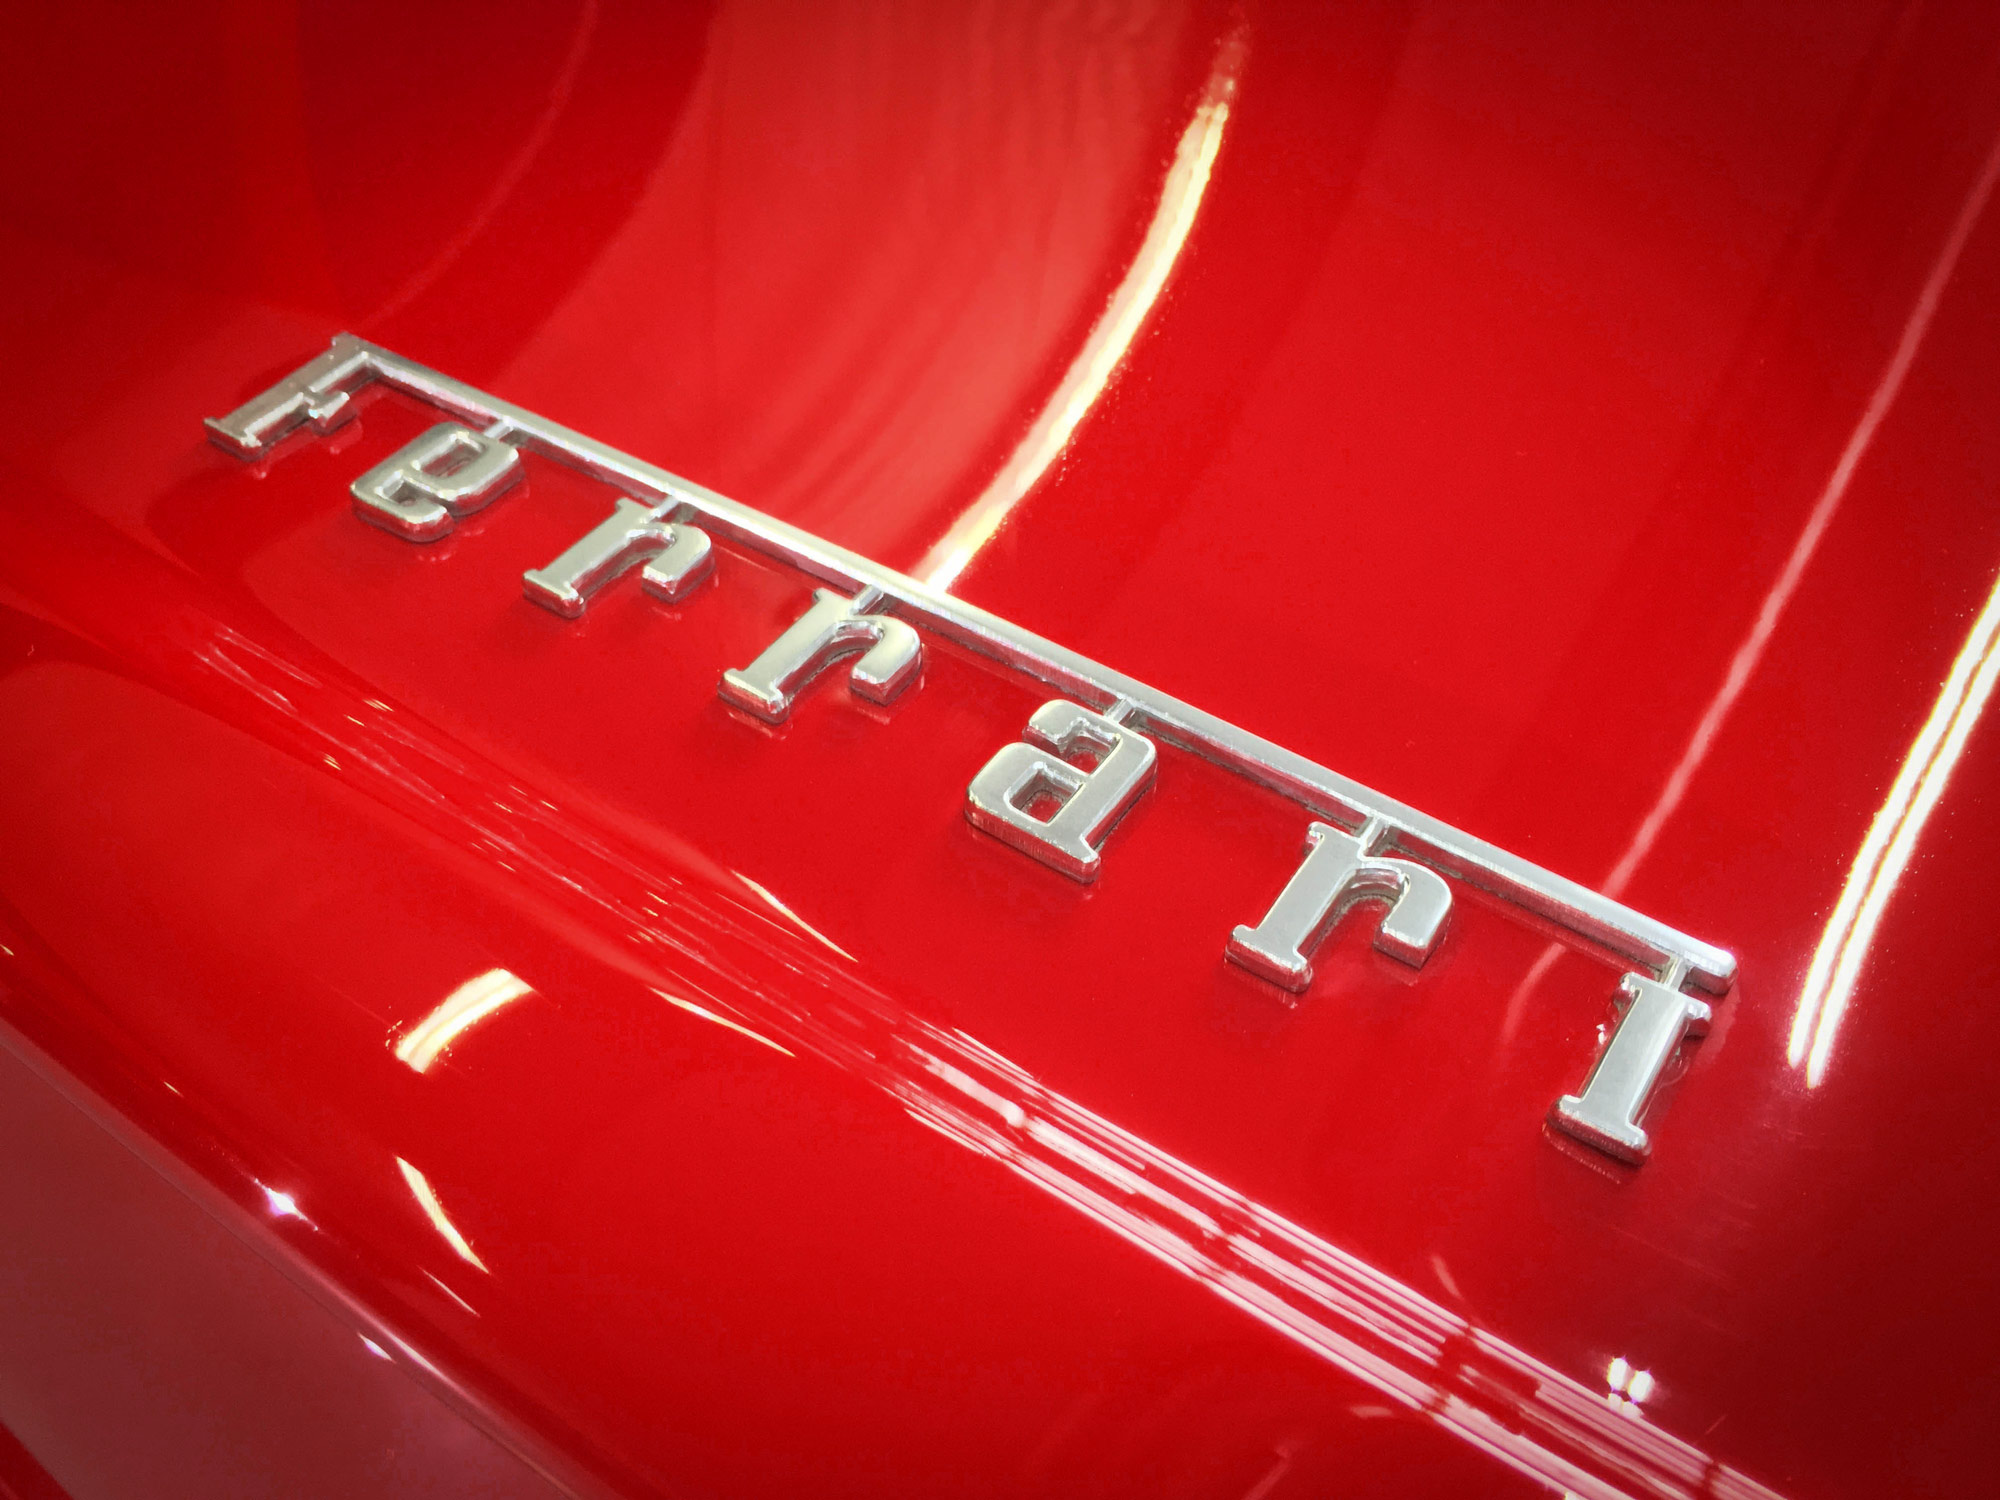 Ferrari 550 Maranello - Ferrari name badge